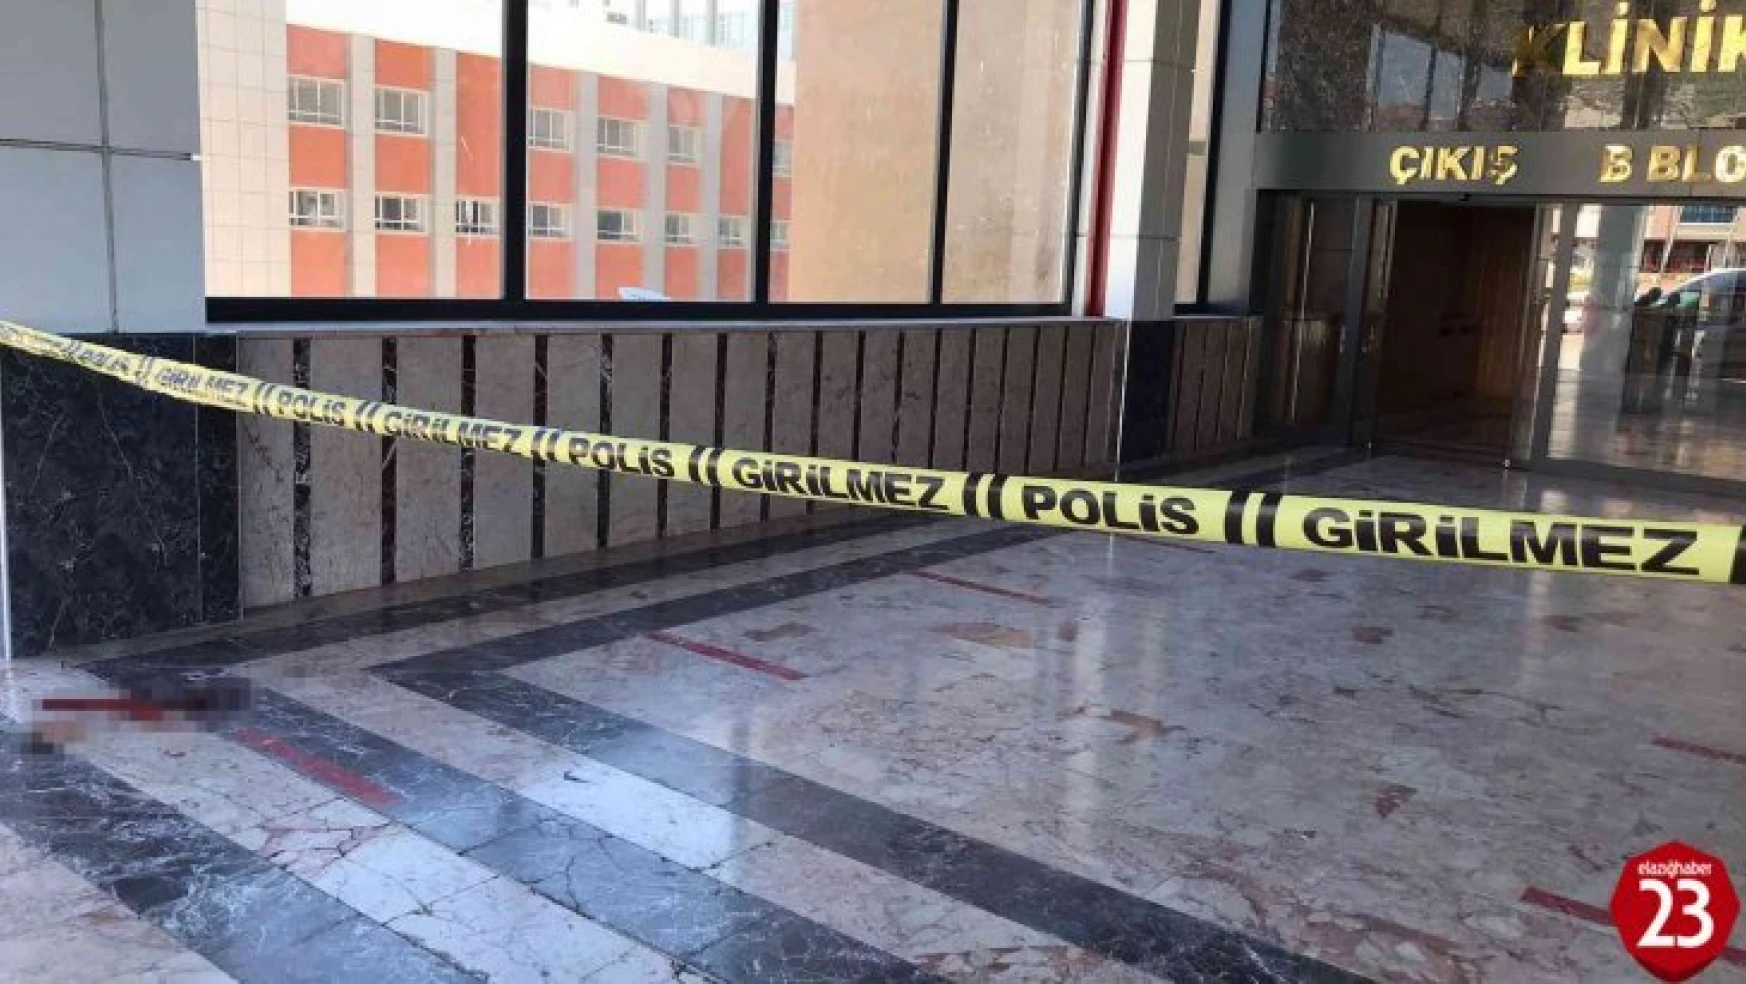 Fırat Üniversitesi Hastanesi İçinde Silahlı Kavga, 1'i Ağır 2 Yaralı